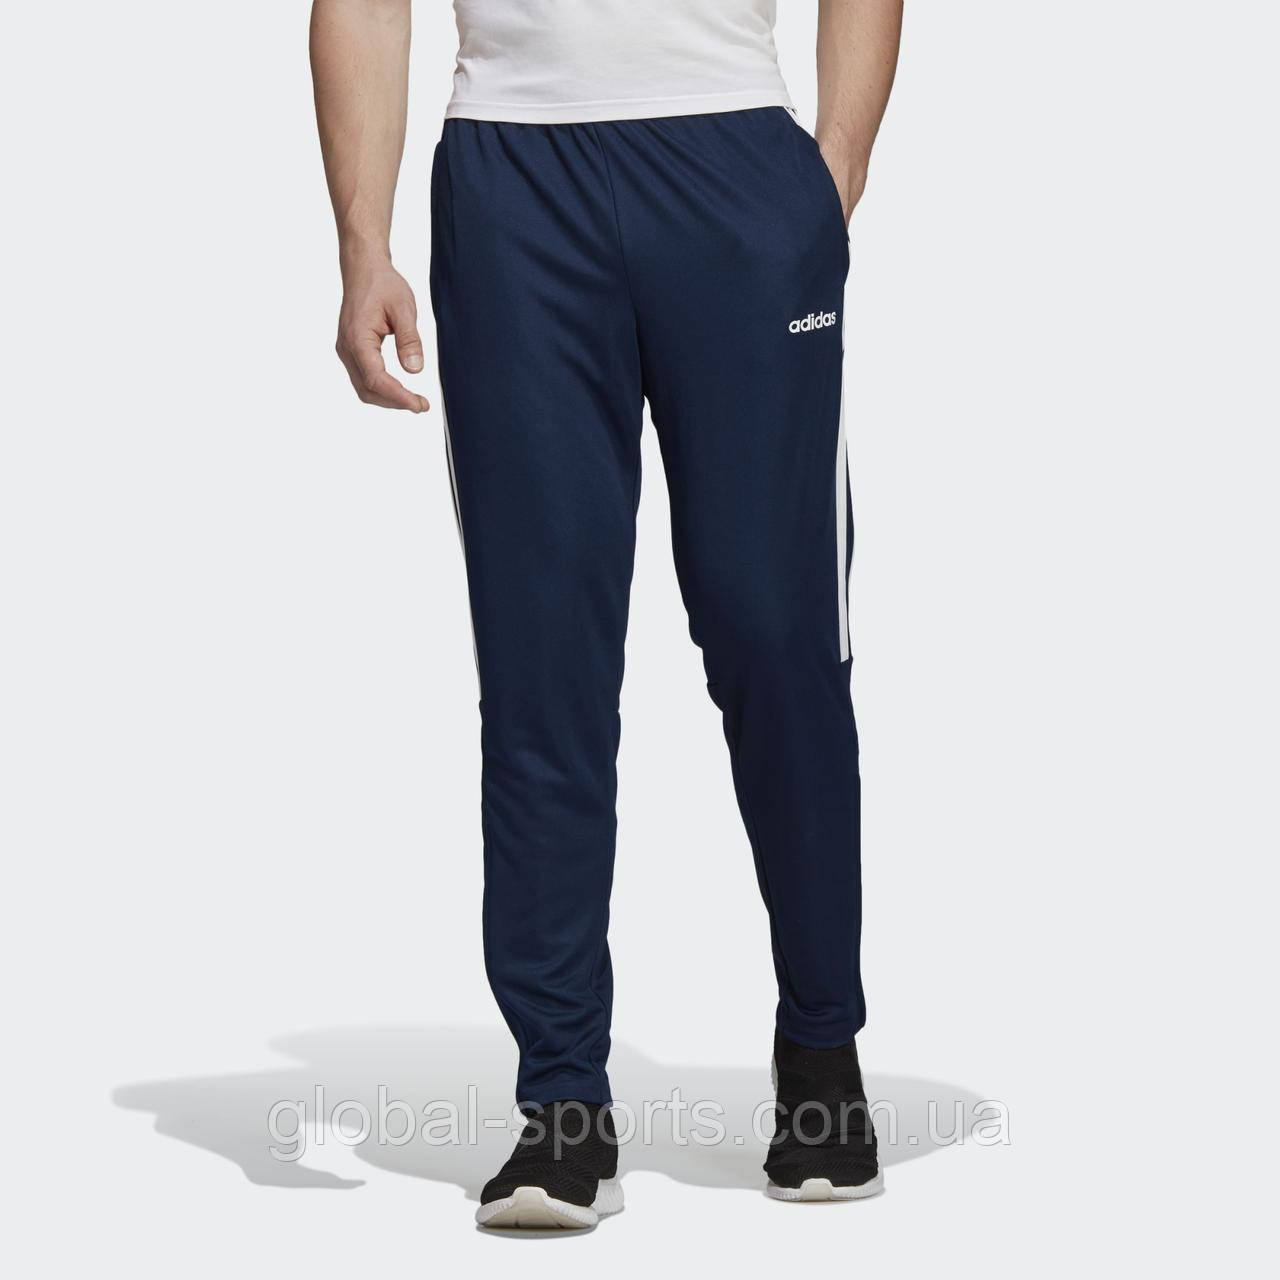 Чоловічі спортивні штани Adidas Sere19 Trg Pnt (Артикул: DY3134)